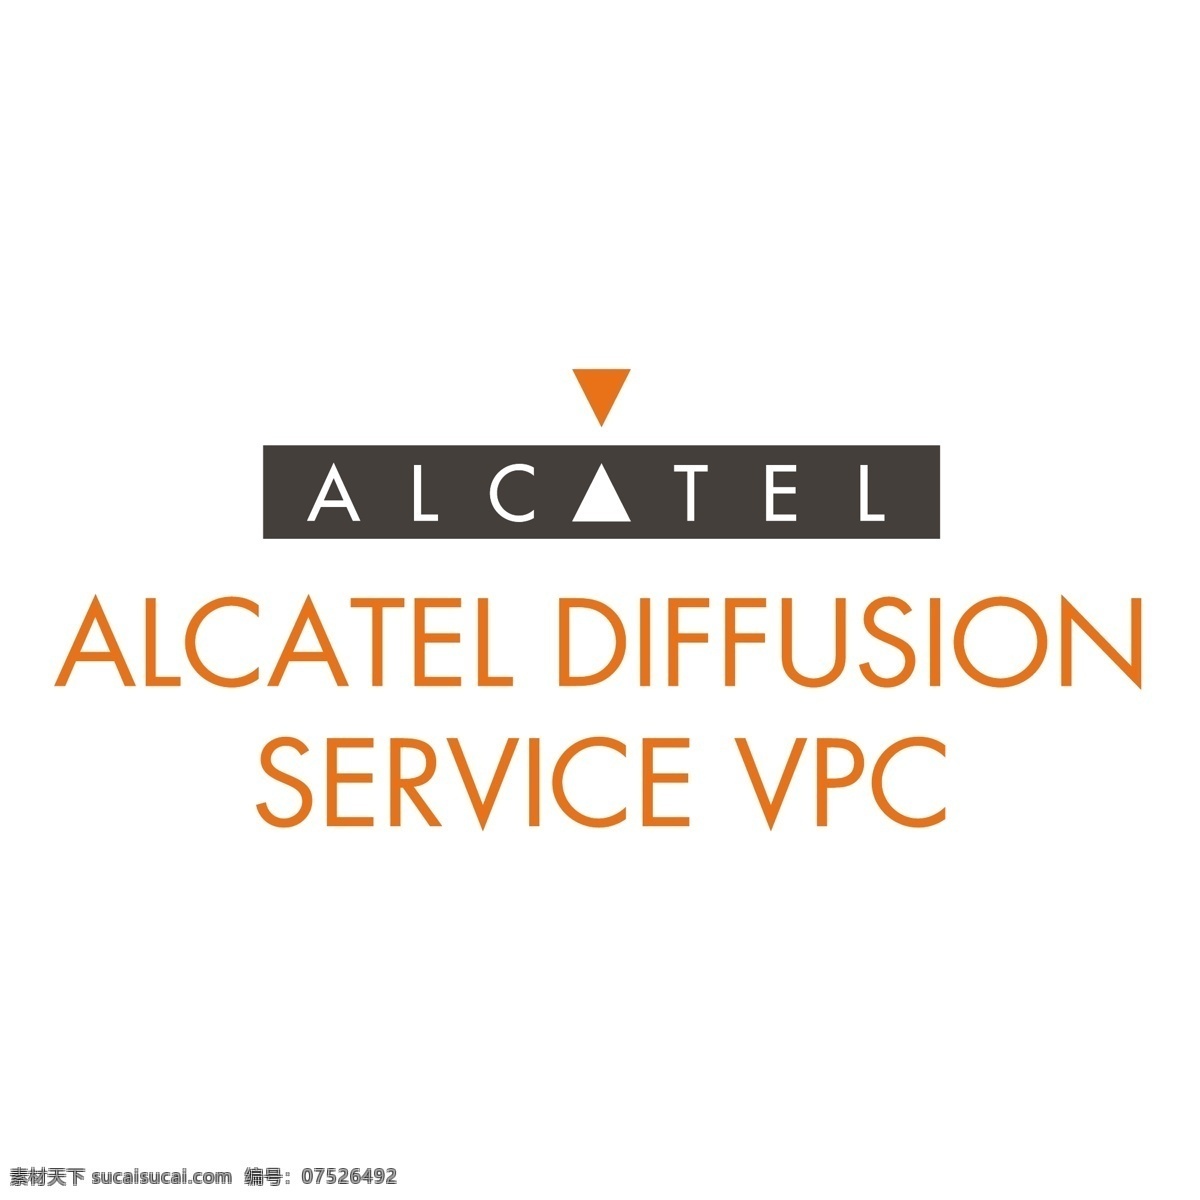 阿尔卡特 扩散 服务 vpc 仓库 免费服务 自由 扩散的服务 服务部门 维修服务 平面设计 向量 设计服务 影像的服务 服务形象 矢量图 建筑家居